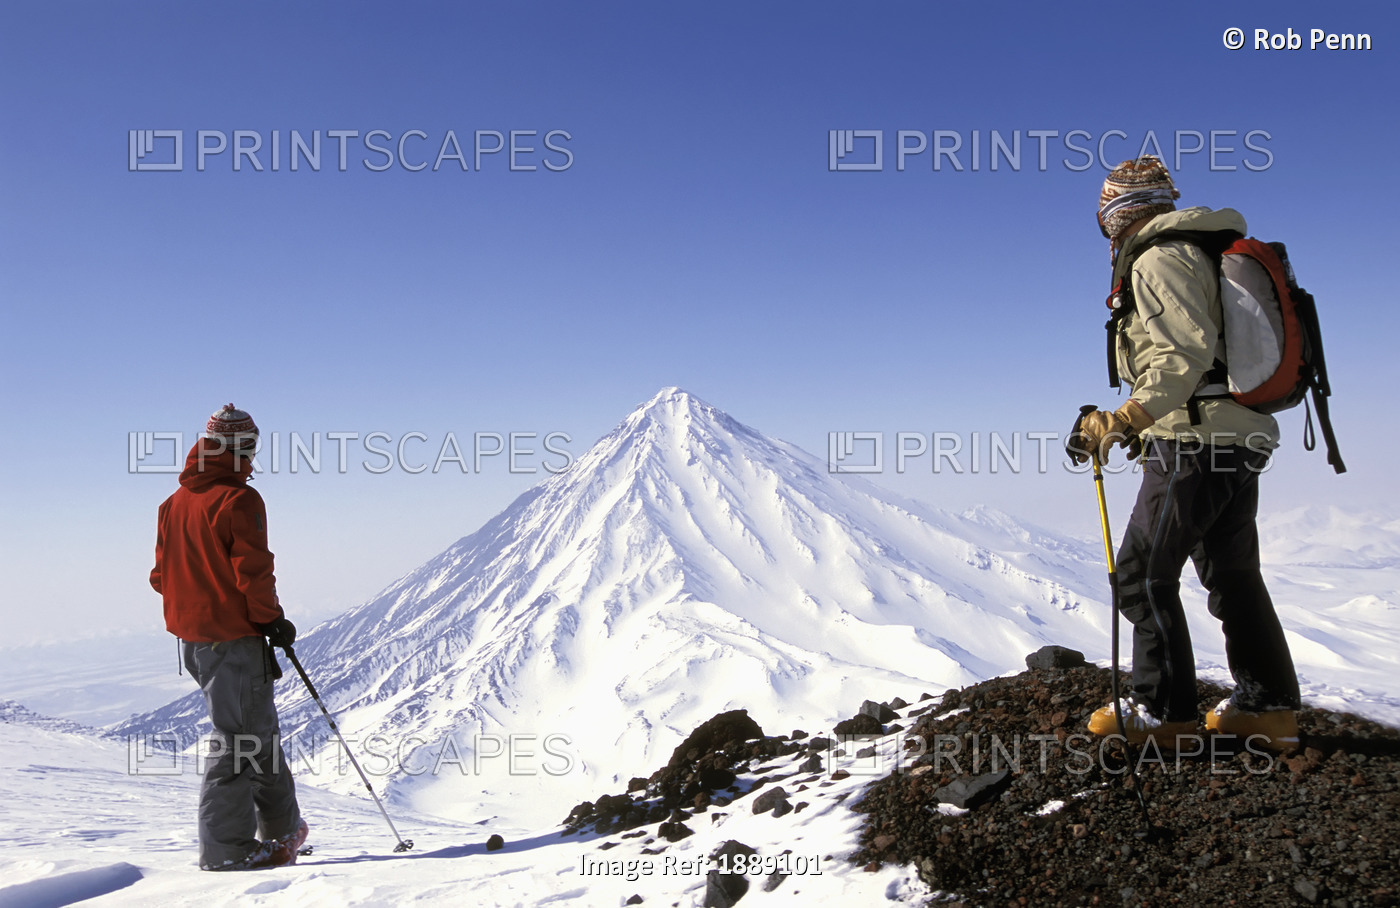 Two Skiers Admiring Snowy Peak